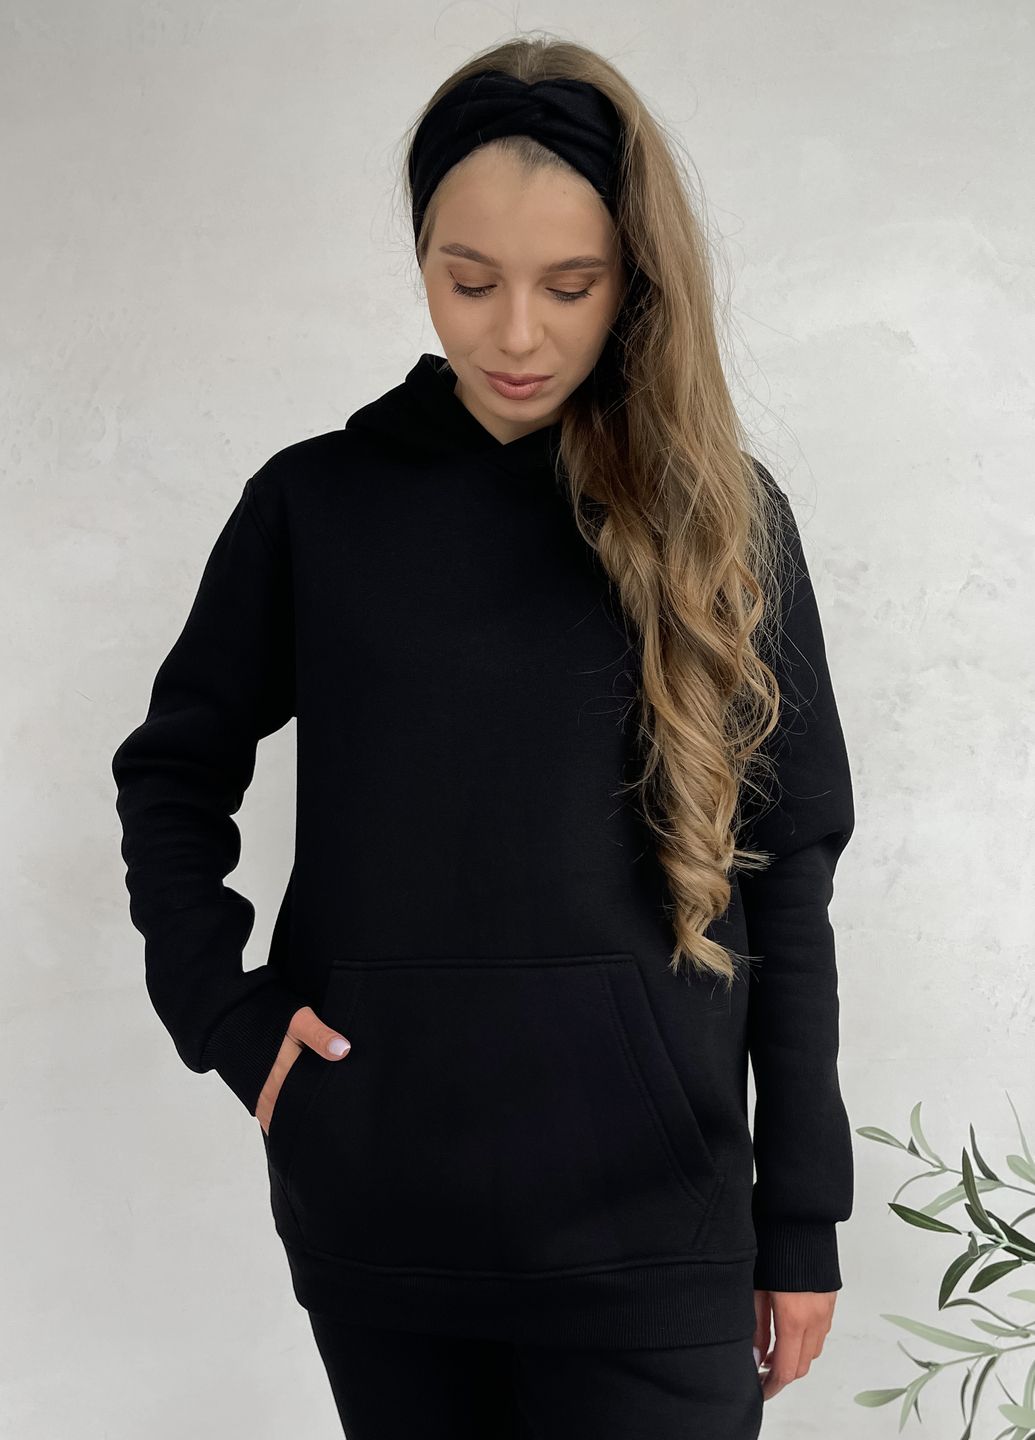 Купить Теплый зимний женский спортивный костюм на флисе черный Merlini Бордо 100001021, размер 42-44 (S-M) в интернет-магазине